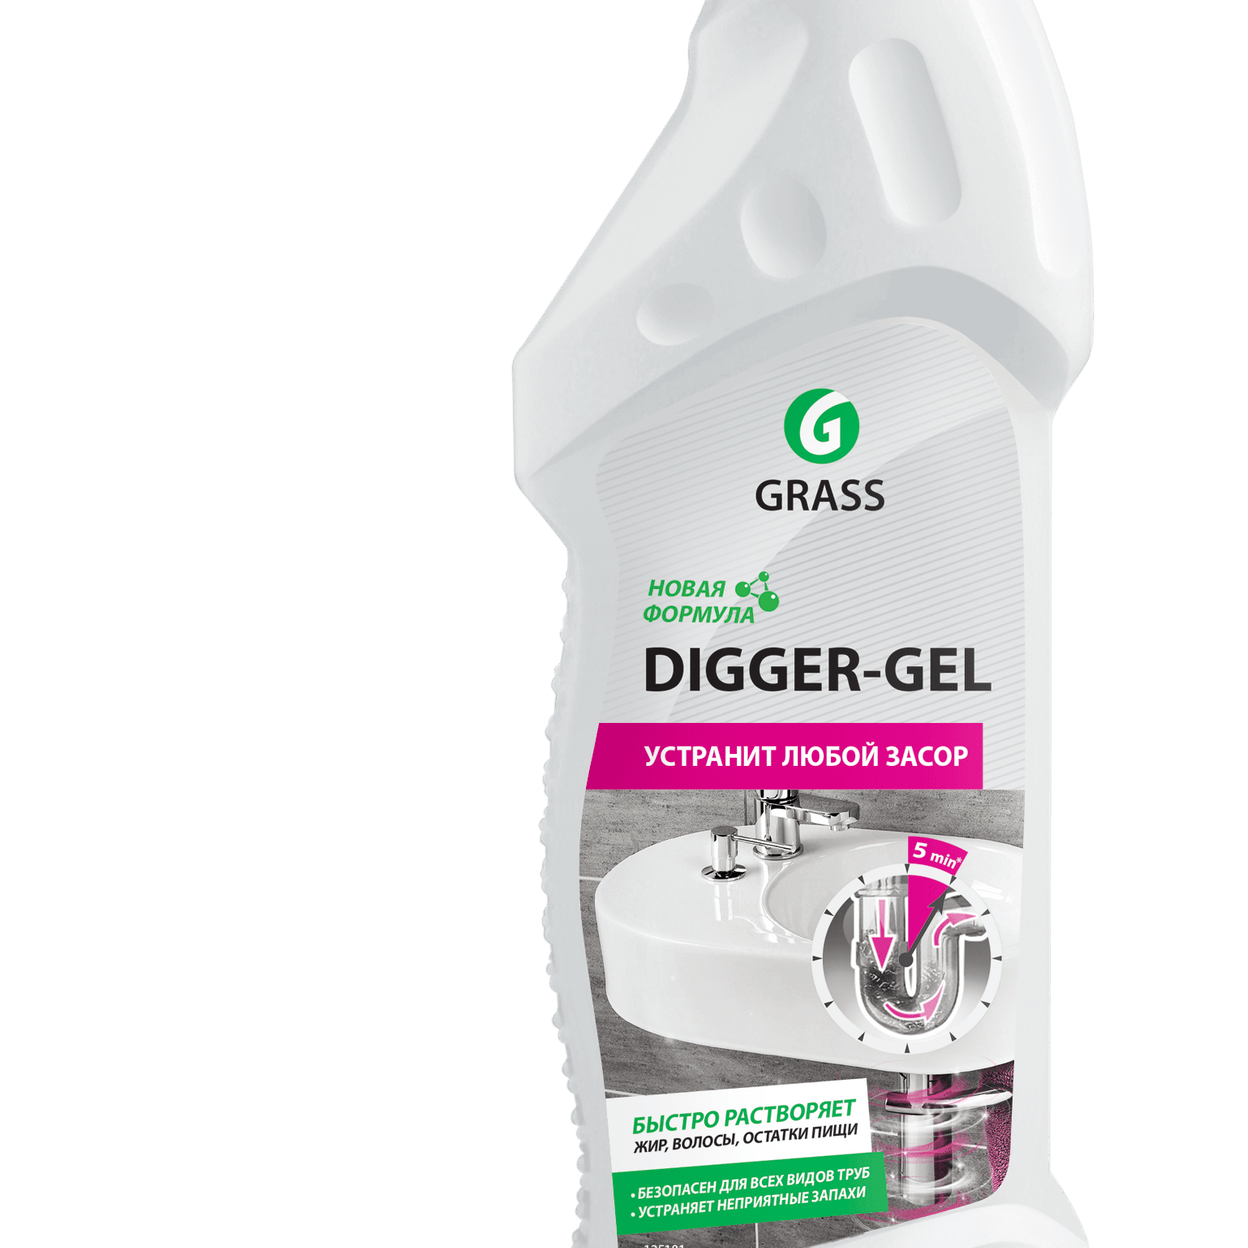 Grass "Digger-Gel" гель для чистки труб 750 мл. 125181 Grass ср-во для прочистки труб "Digger-Gel" 750 мл, шт. Средство Грасс диггер гель для прочистки канализационных труб 750 мл. Диггер гель 750мл. Digger gel для прочистки труб